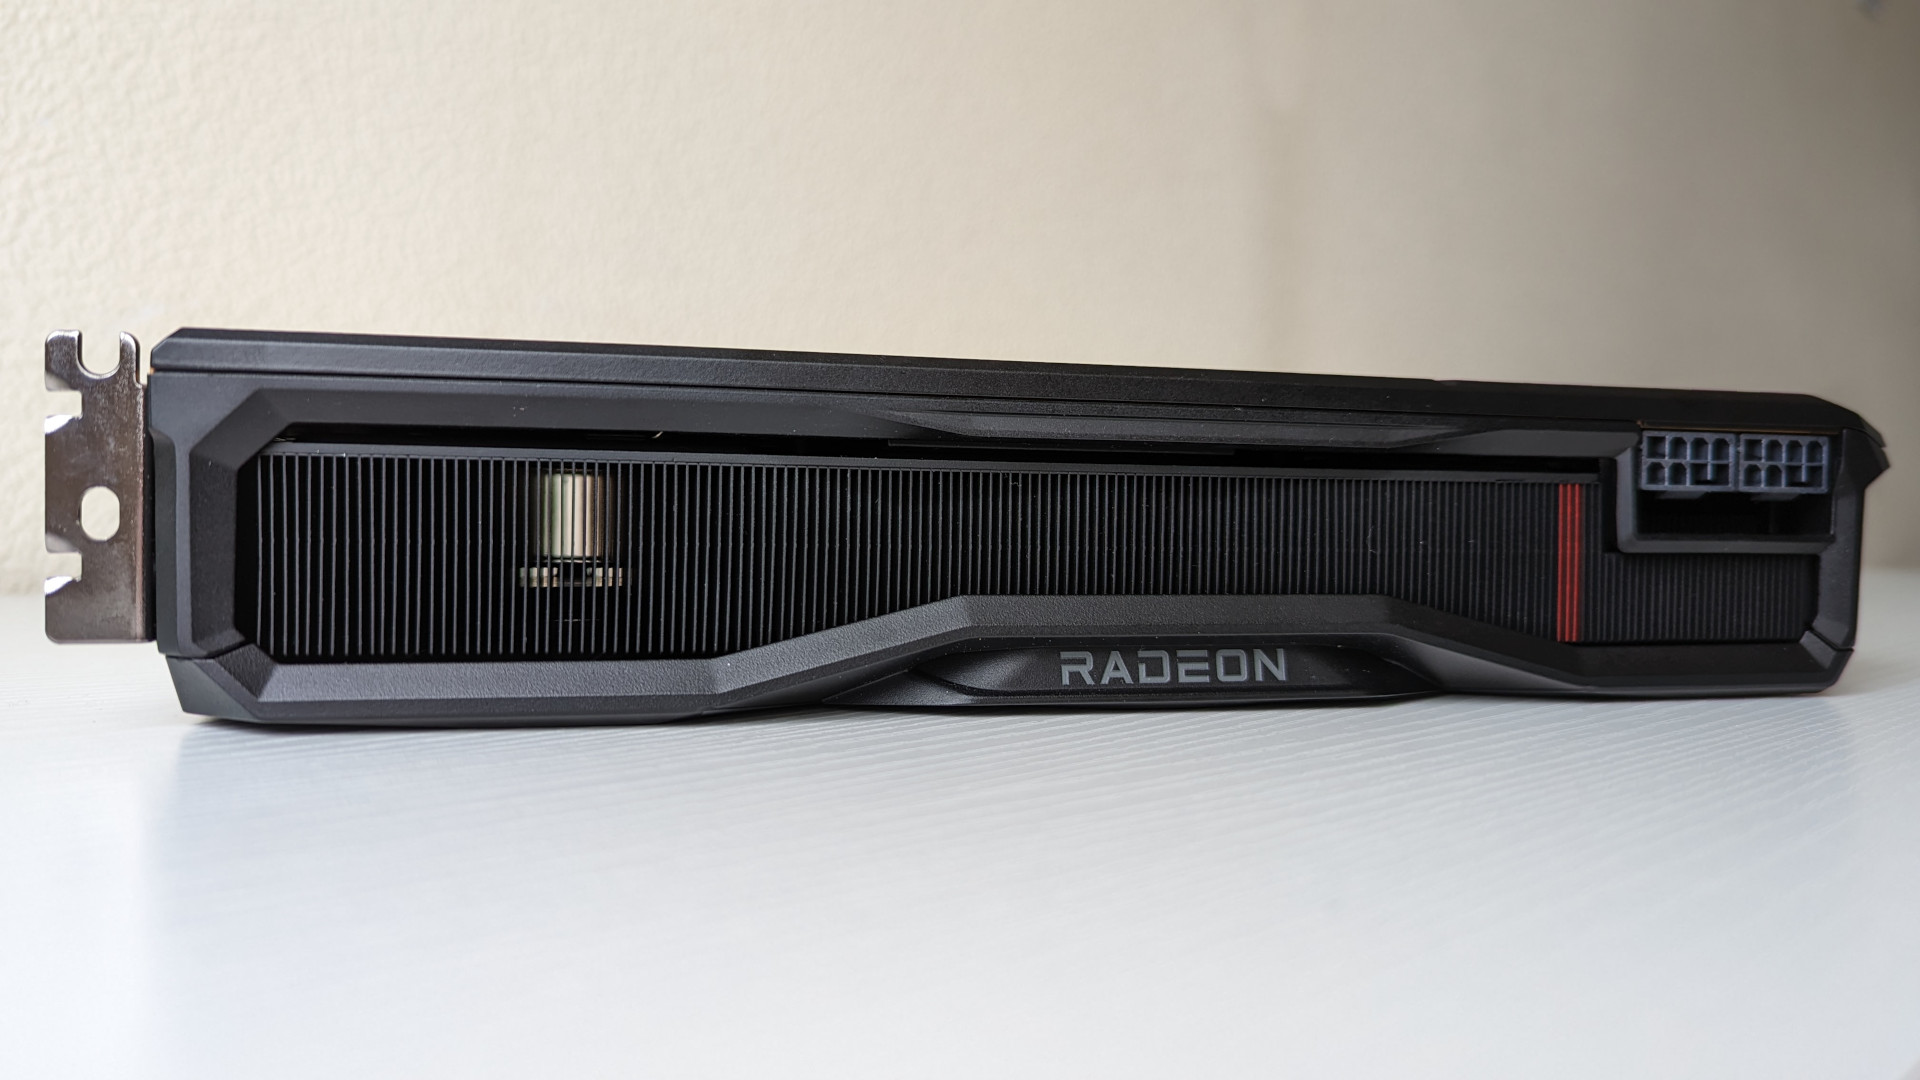 Side view of the AMD Radeon RX 7900 XT showing its heatsink